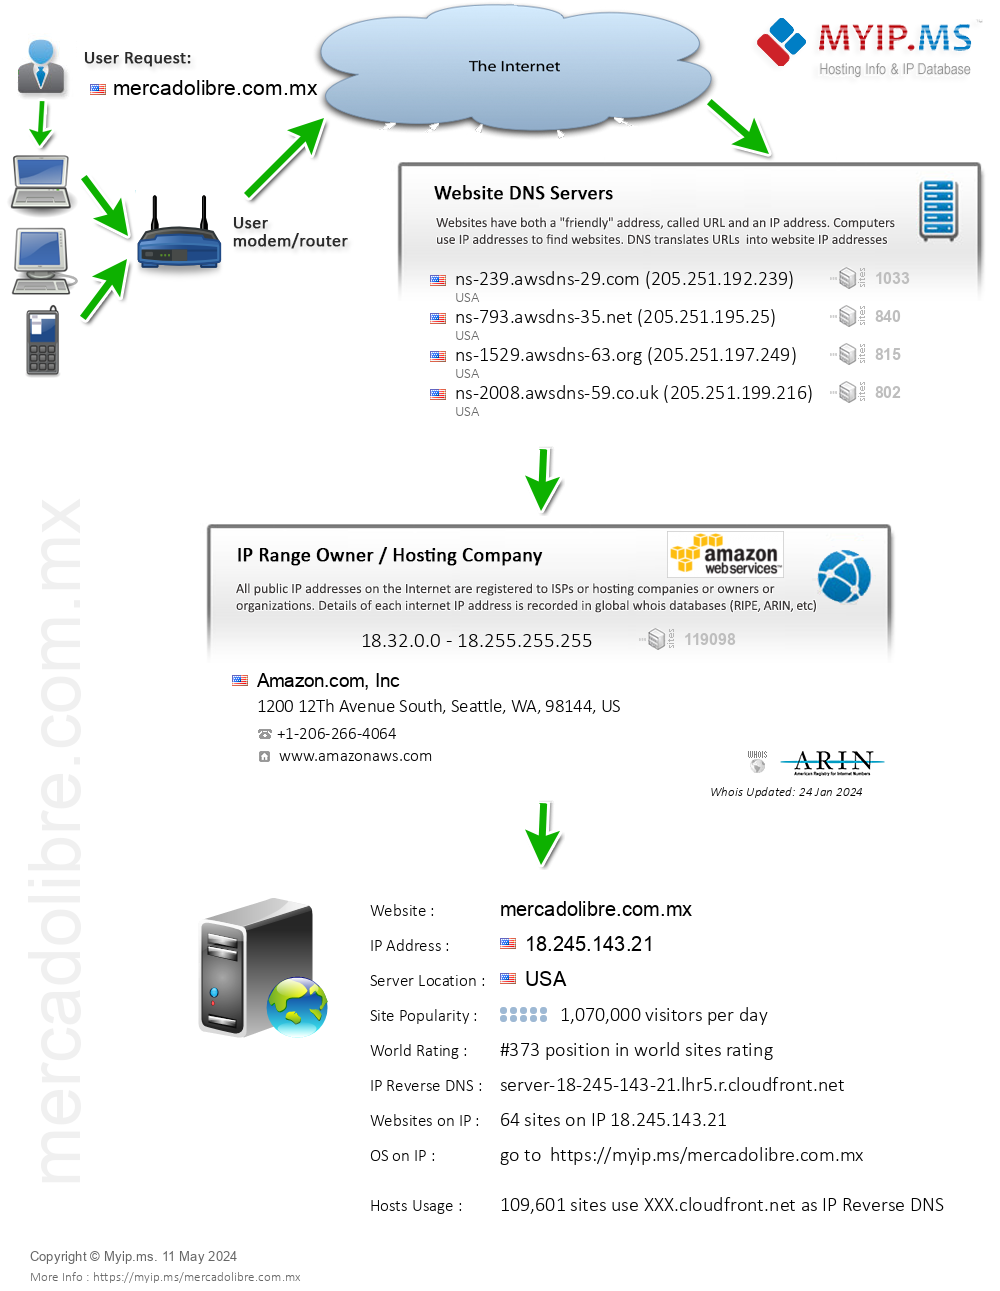 Mercadolibre.com.mx - Website Hosting Visual IP Diagram